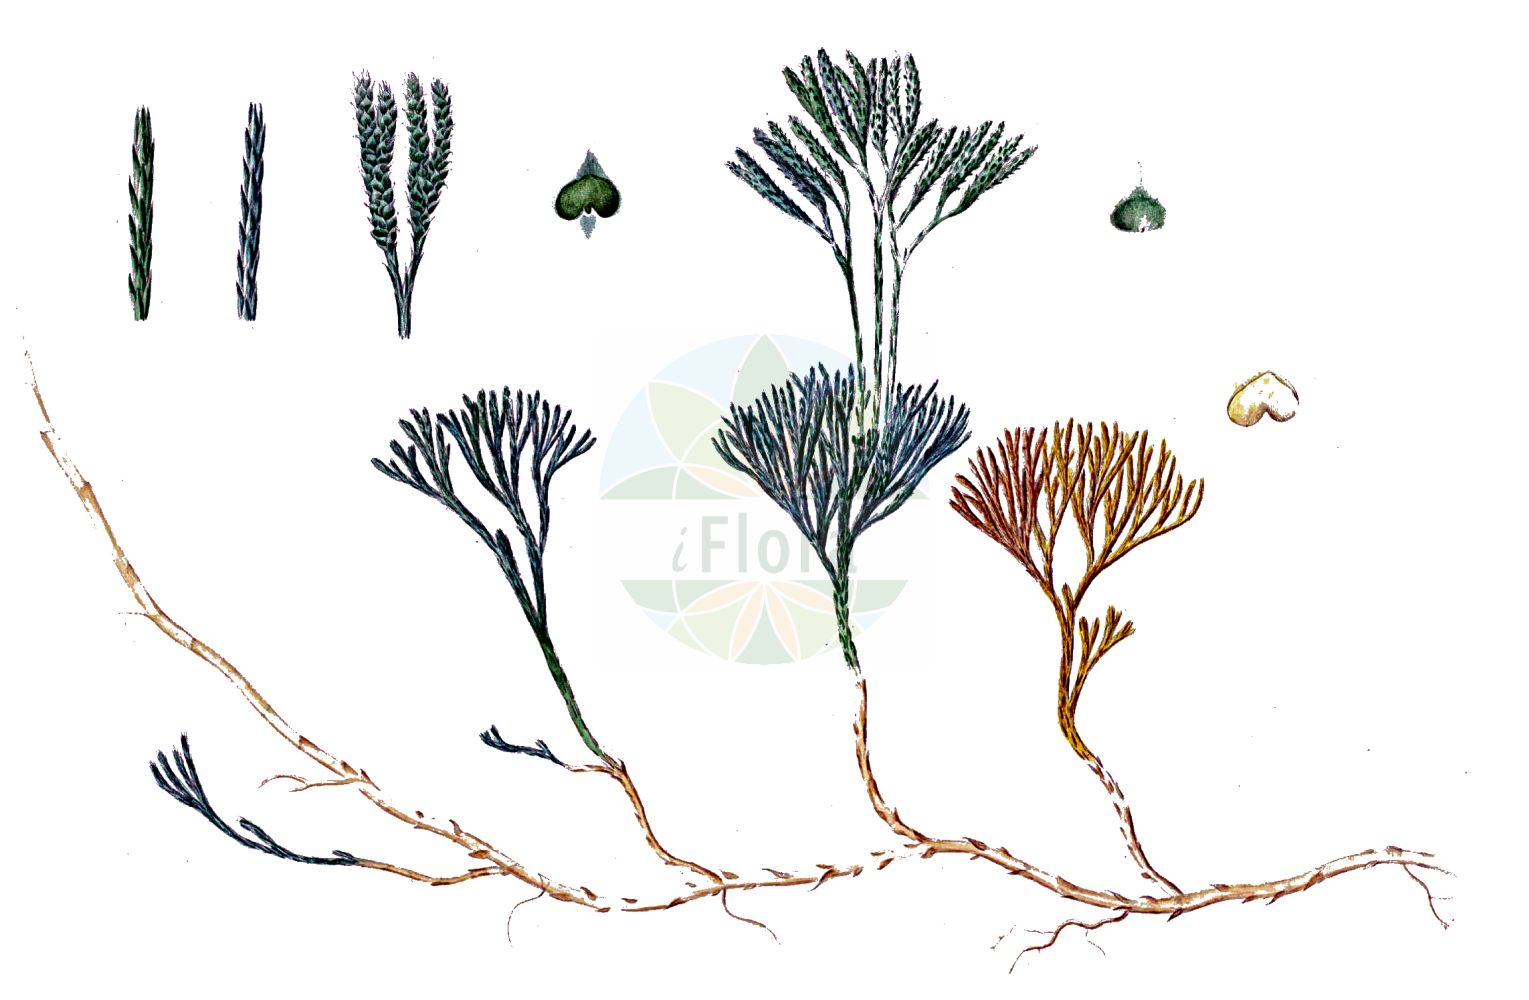 Historische Abbildung von Lycopodium complanatum (Gewöhnlicher Flachbärlapp - Issler's Clubmoss). Das Bild zeigt Blatt, Bluete, Frucht und Same. ---- Historical Drawing of Lycopodium complanatum (Gewöhnlicher Flachbärlapp - Issler's Clubmoss). The image is showing leaf, flower, fruit and seed.(Lycopodium complanatum,Gewöhnlicher Flachbärlapp,Issler's Clubmoss,Diphasiastrum complanatum,Diphasium anceps,Diphasium complanatum,Lycopodium anceps,Lycopodium complanatum,Lycopodium complanatum subsp. montellii,Gewoehnlicher Flachbaerlapp,Gewoehnlicher Flachbaerlapp,Issler's Clubmoss,Flat-stemmed Clubmoss,Groundcedar,Complanate Clubmoss,Lycopodium,Bärlapp,Clubmoss,Lycopodiaceae,Bärlappgewächse,Clubmoss family,Blatt,Bluete,Frucht,Same,leaf,flower,fruit,seed,Oeder (1761-1883))